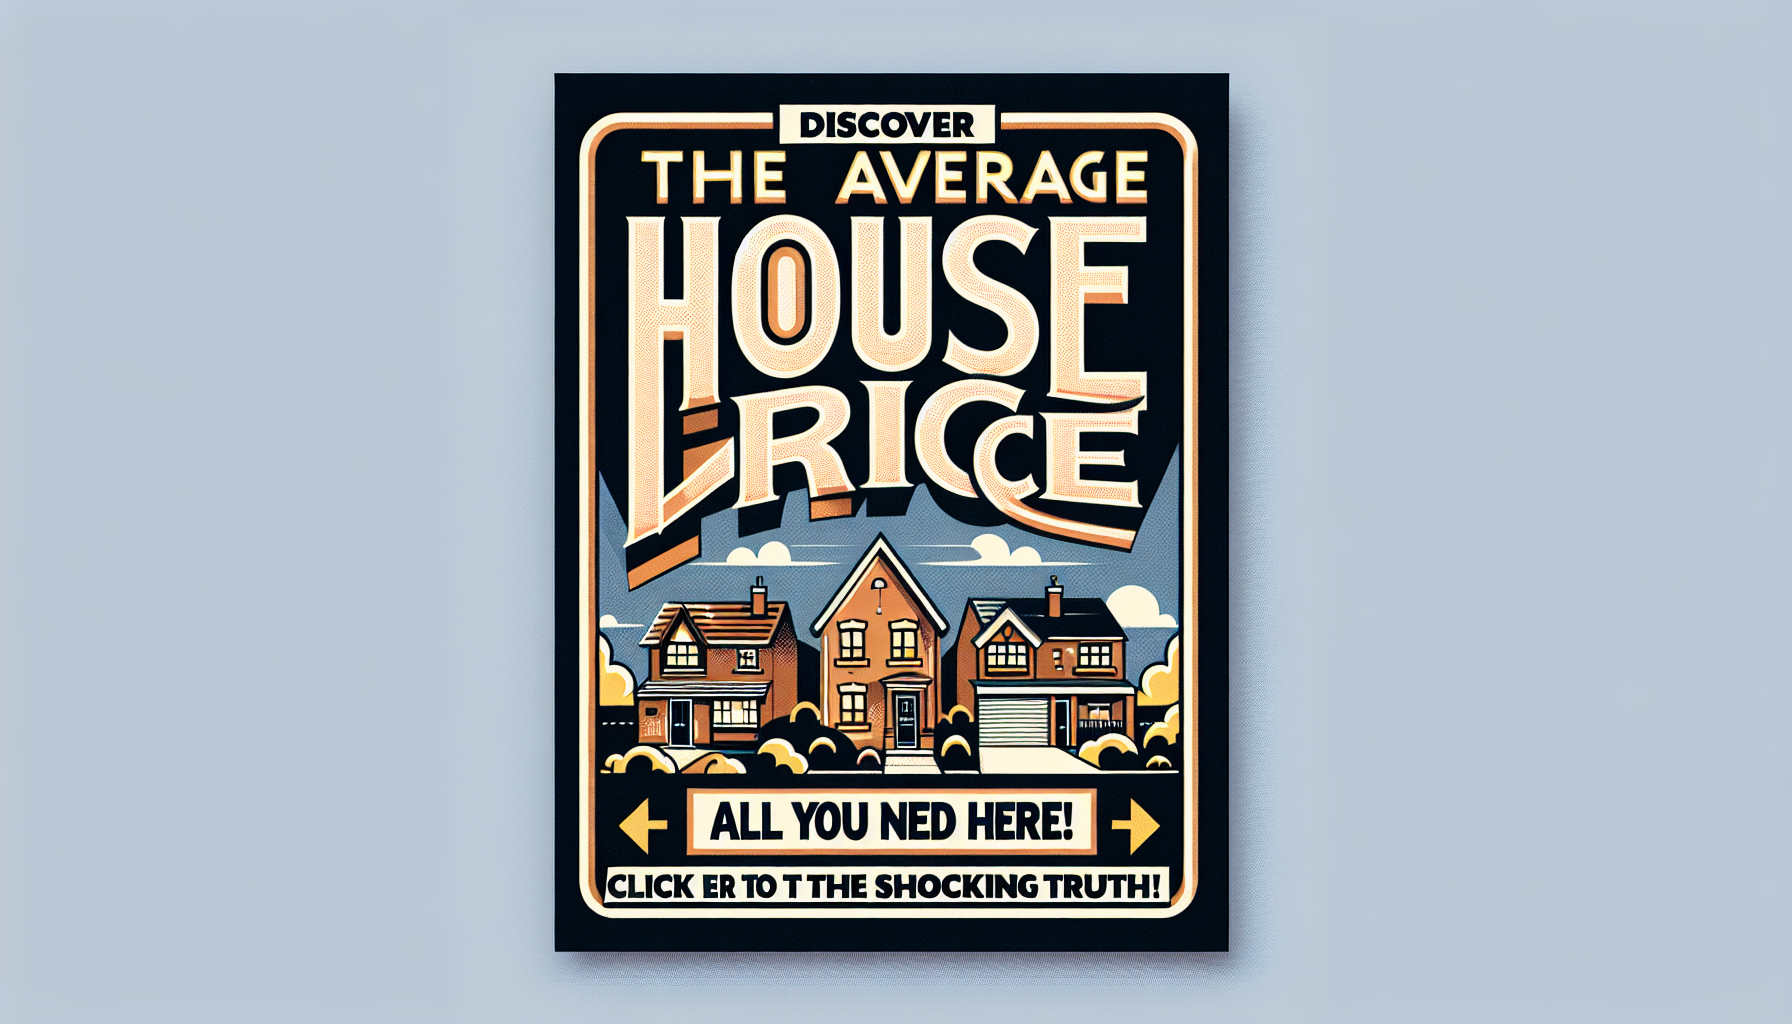 découvrez tout ce que vous devez savoir sur le prix moyen d'une maison pour faire le meilleur choix. informations et conseils essentiels.